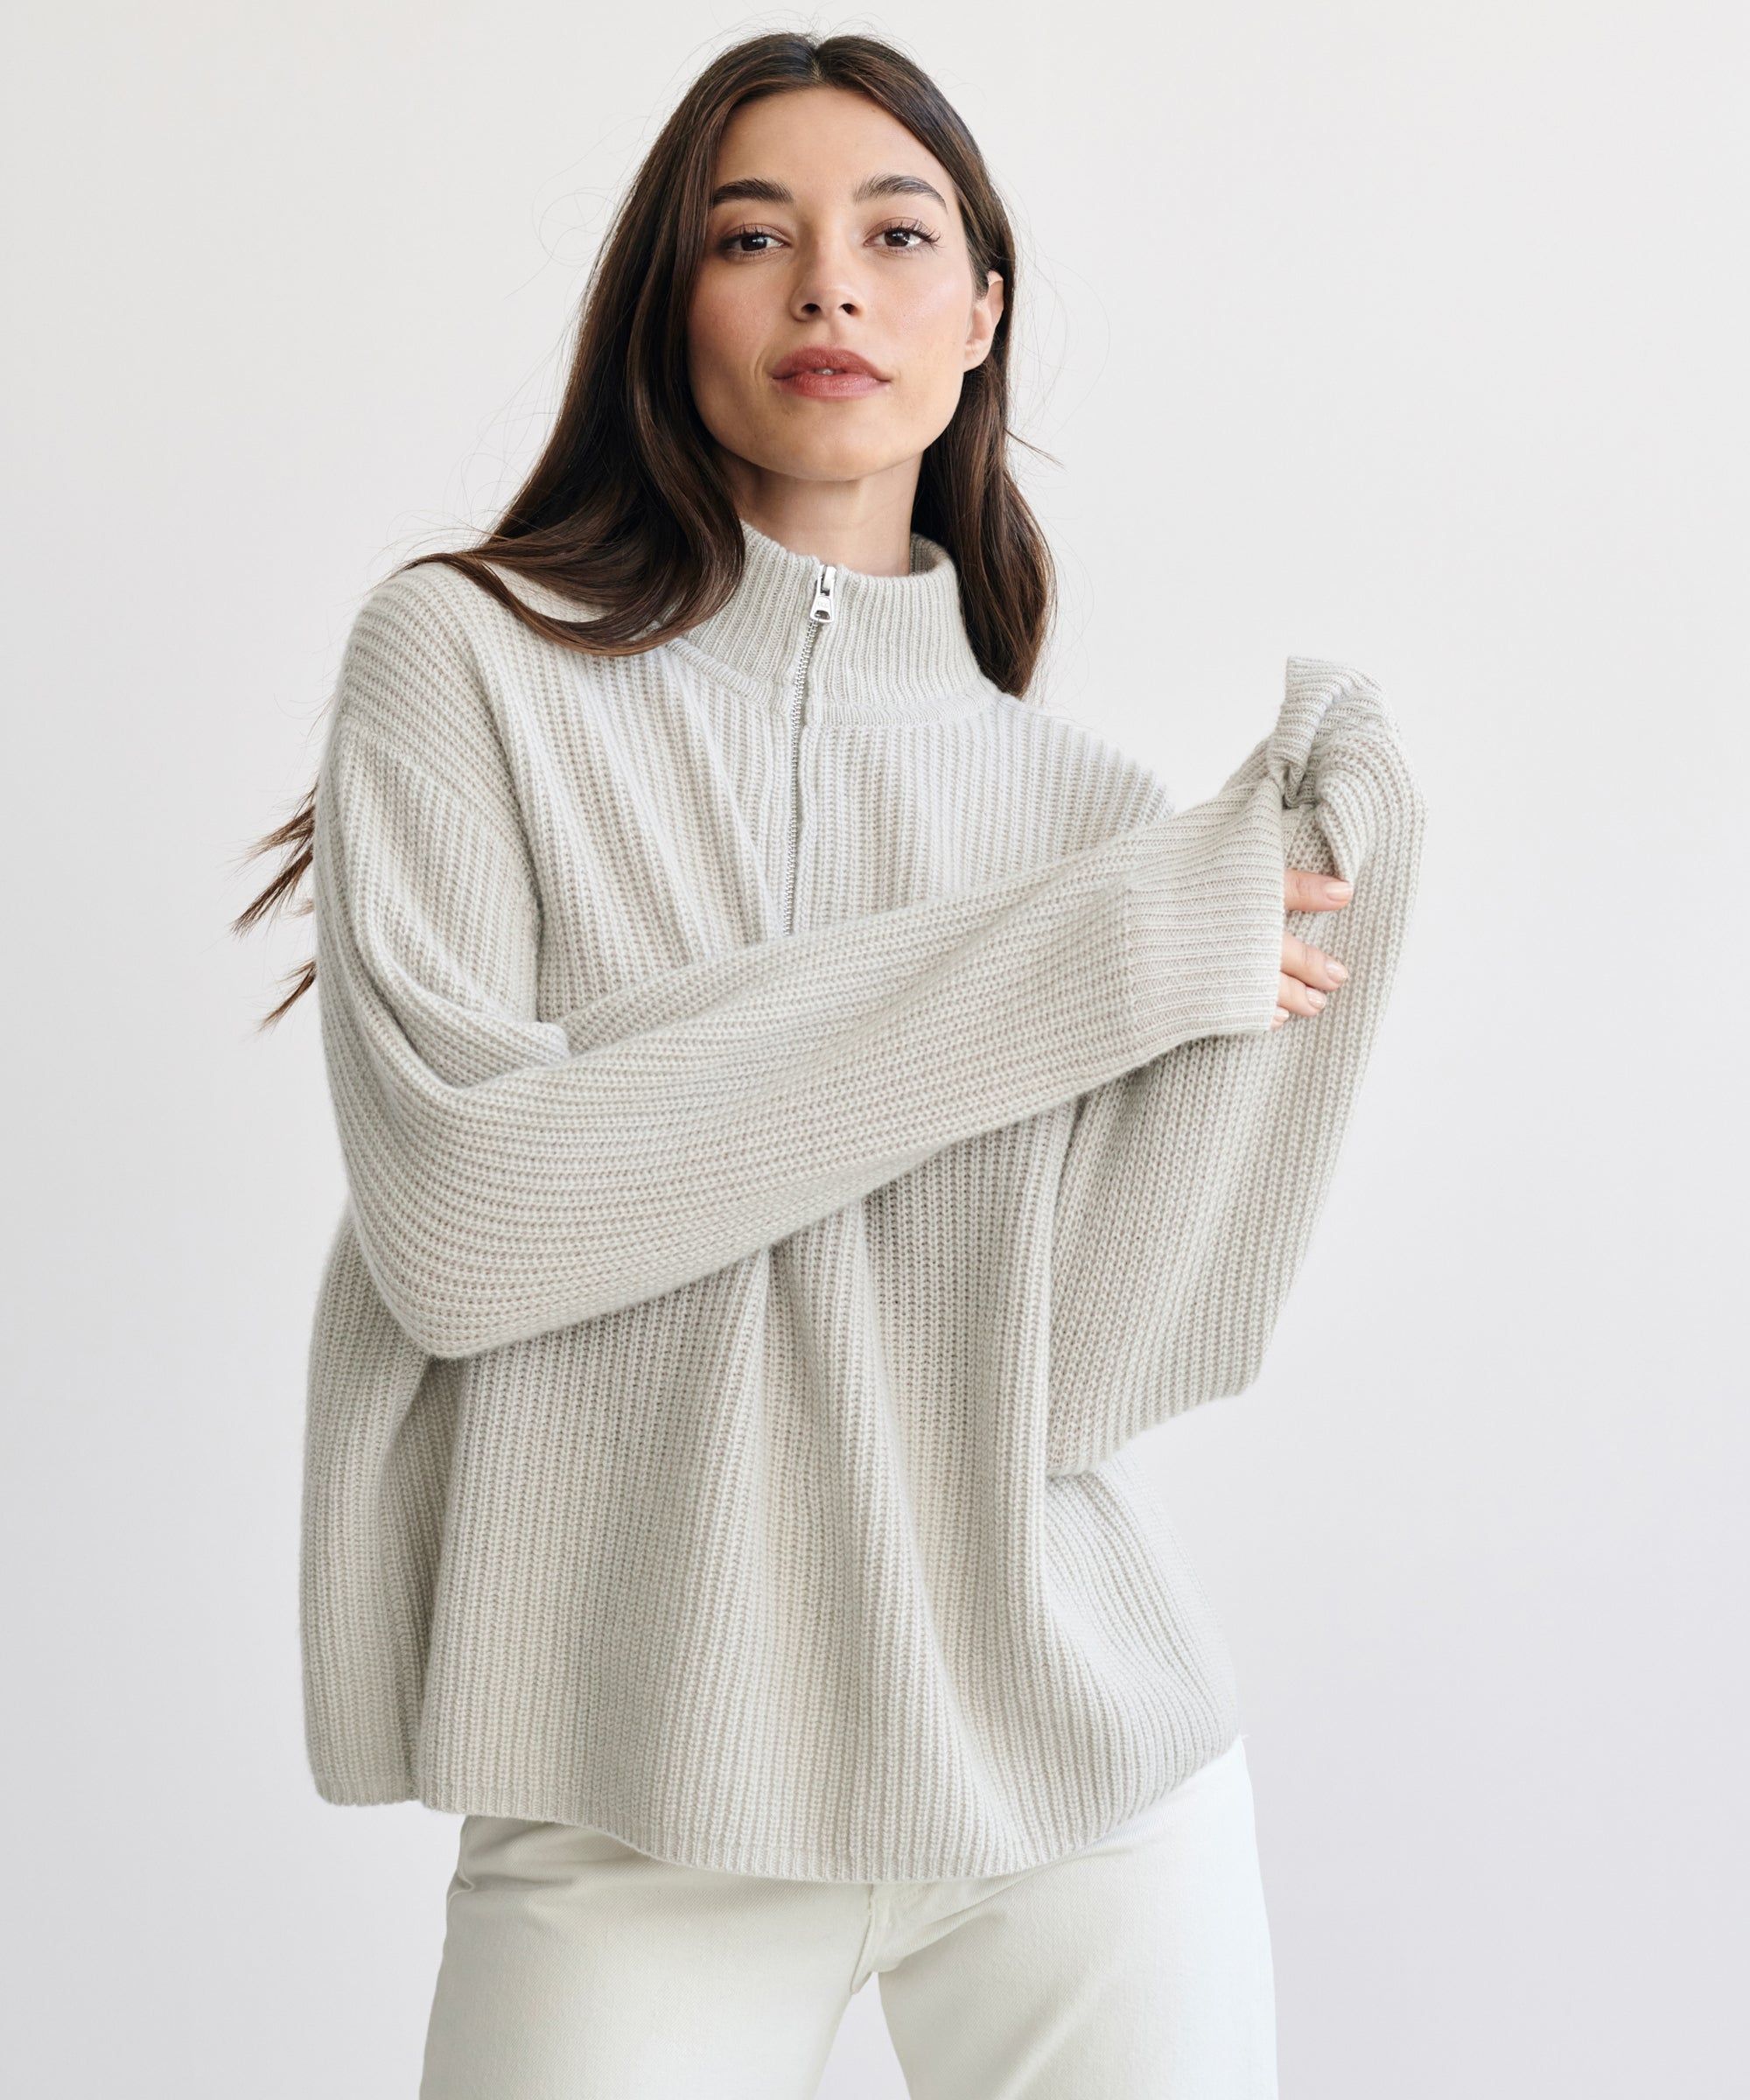 Best Half-Zip Sweaters 2023: 11 Cozy Half-Zip Sweaters for Women